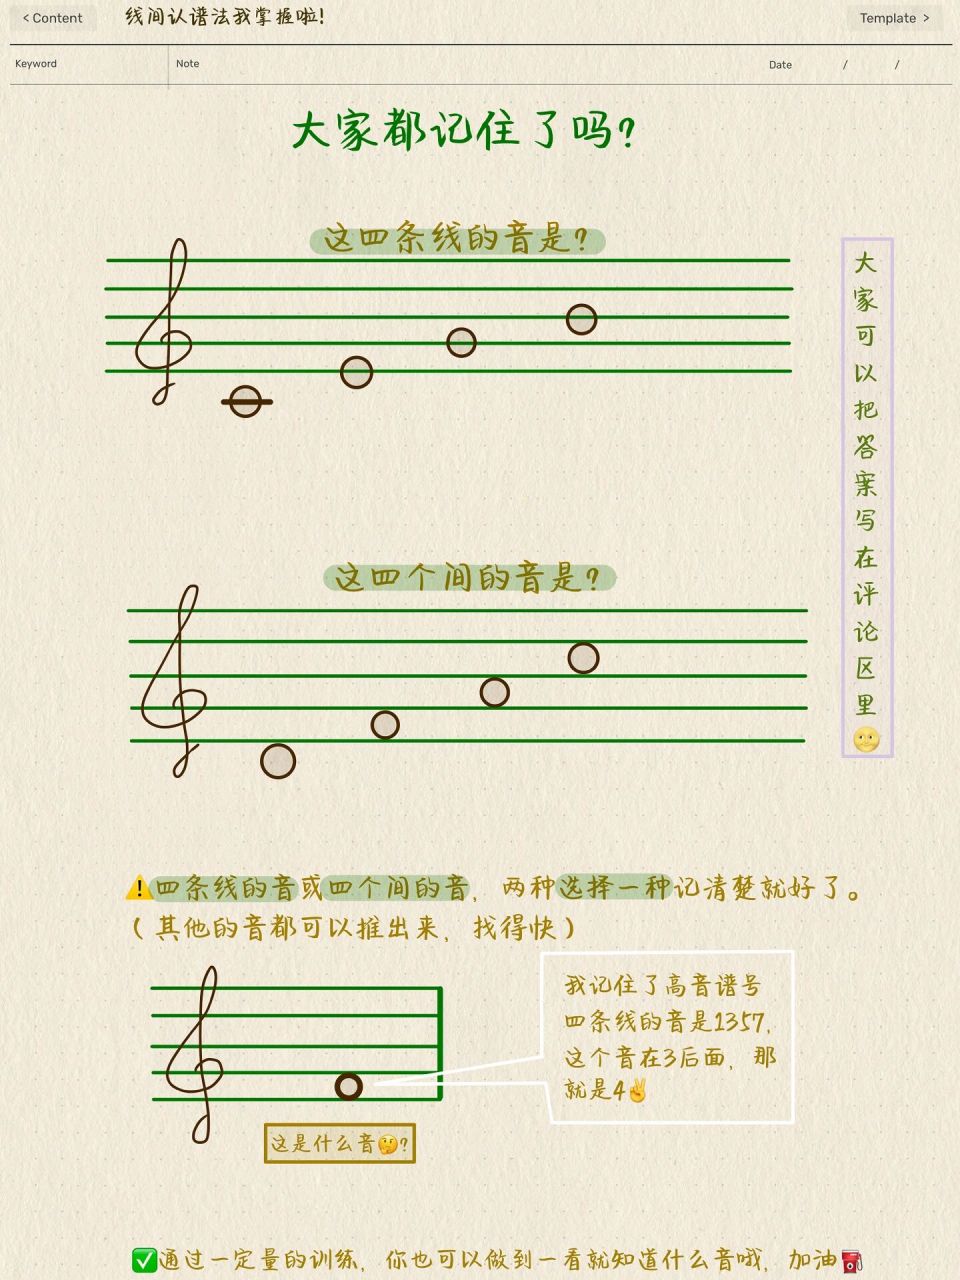 罗兰管弦乐音色对照表图片